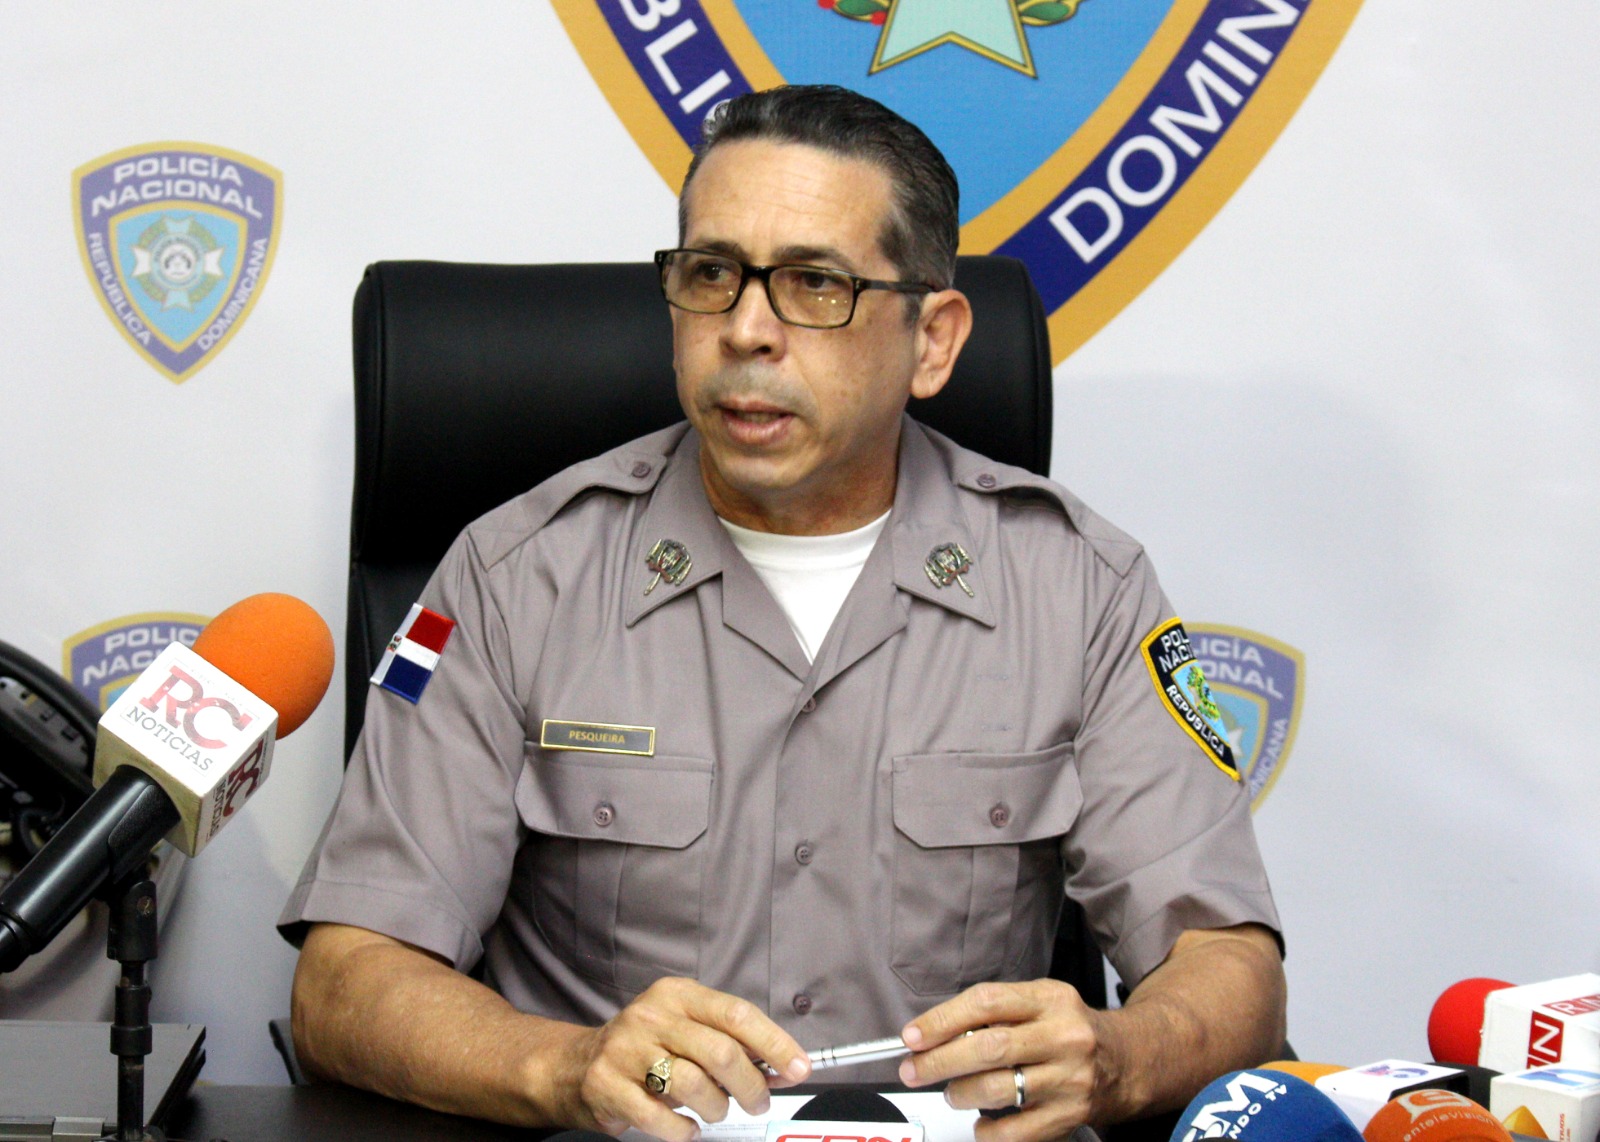 Policía Nacional amplía investigaciones en torno muerte de oficial ERD en Villa Liberación, SDE